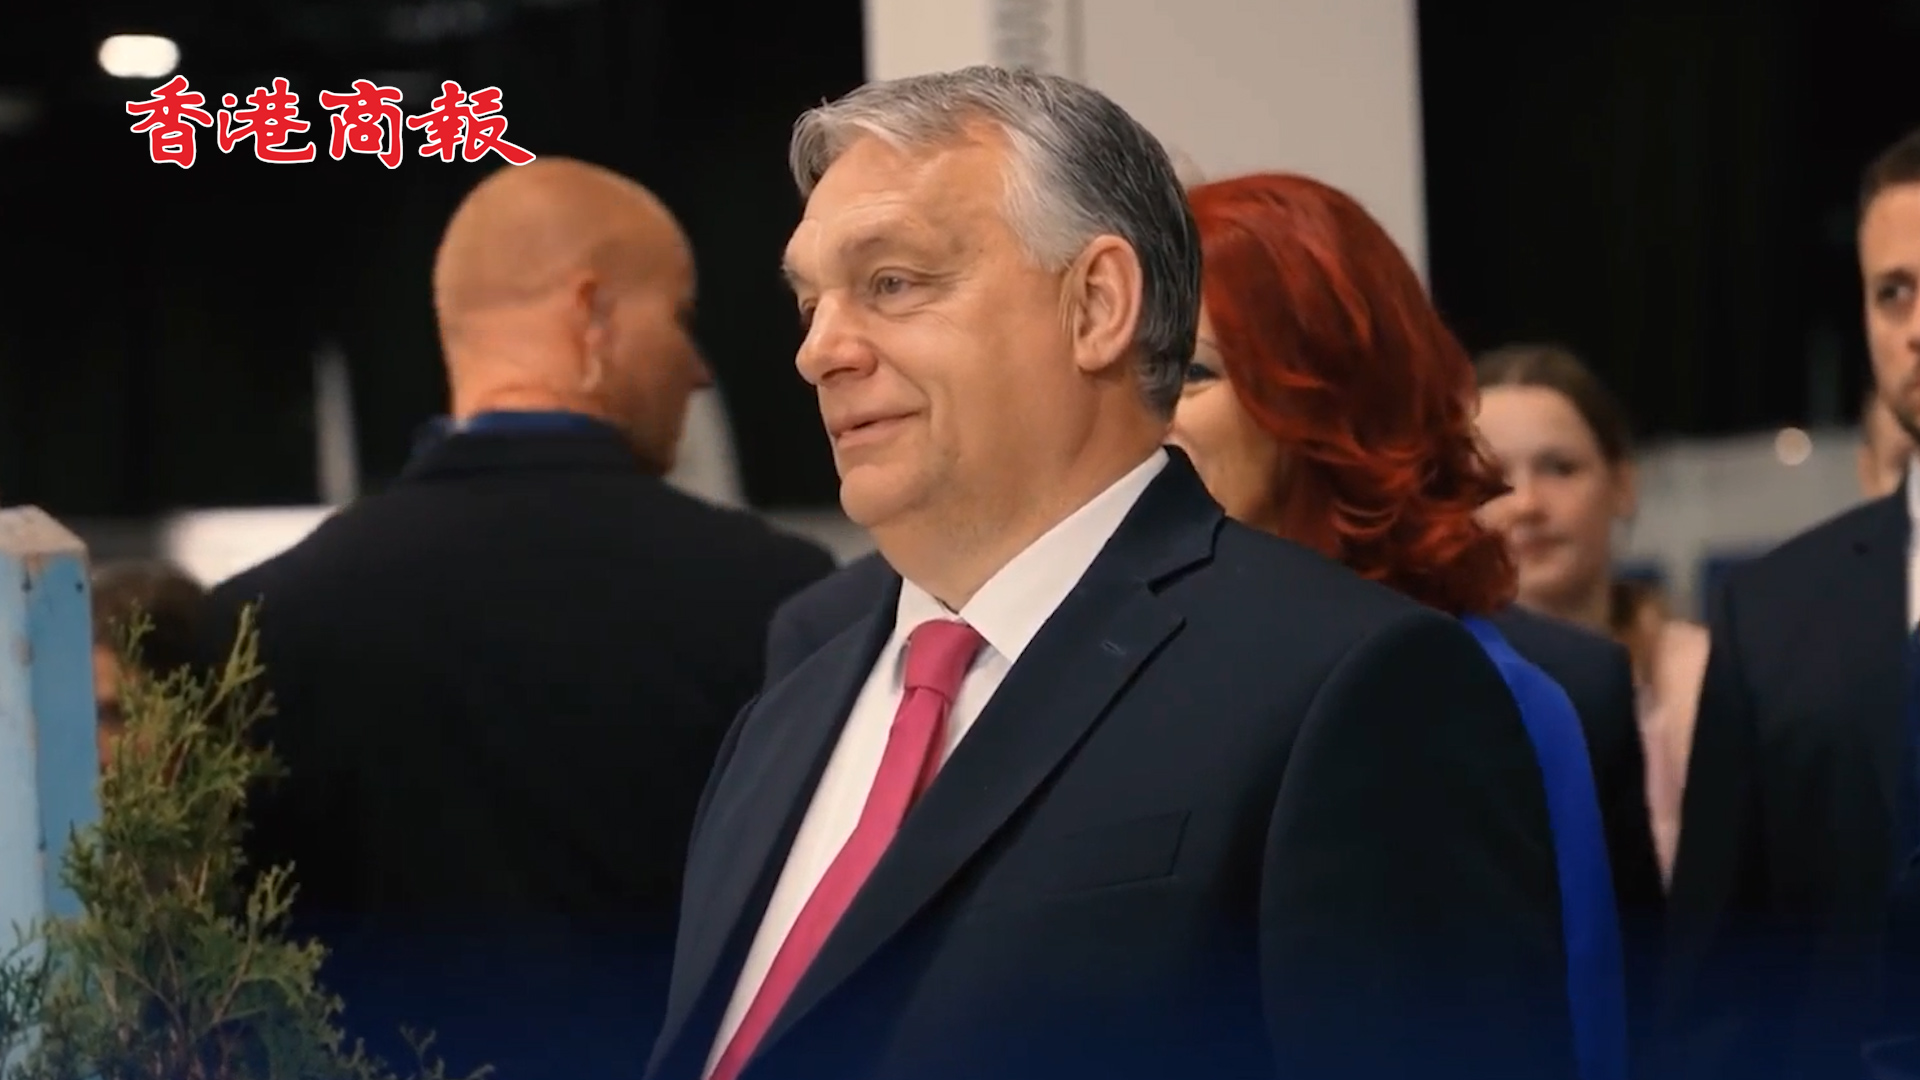 有片丨匈牙利總理歐爾班秀甩鞭技術 並發文「這就是為什麼不要惹怒匈牙利人」